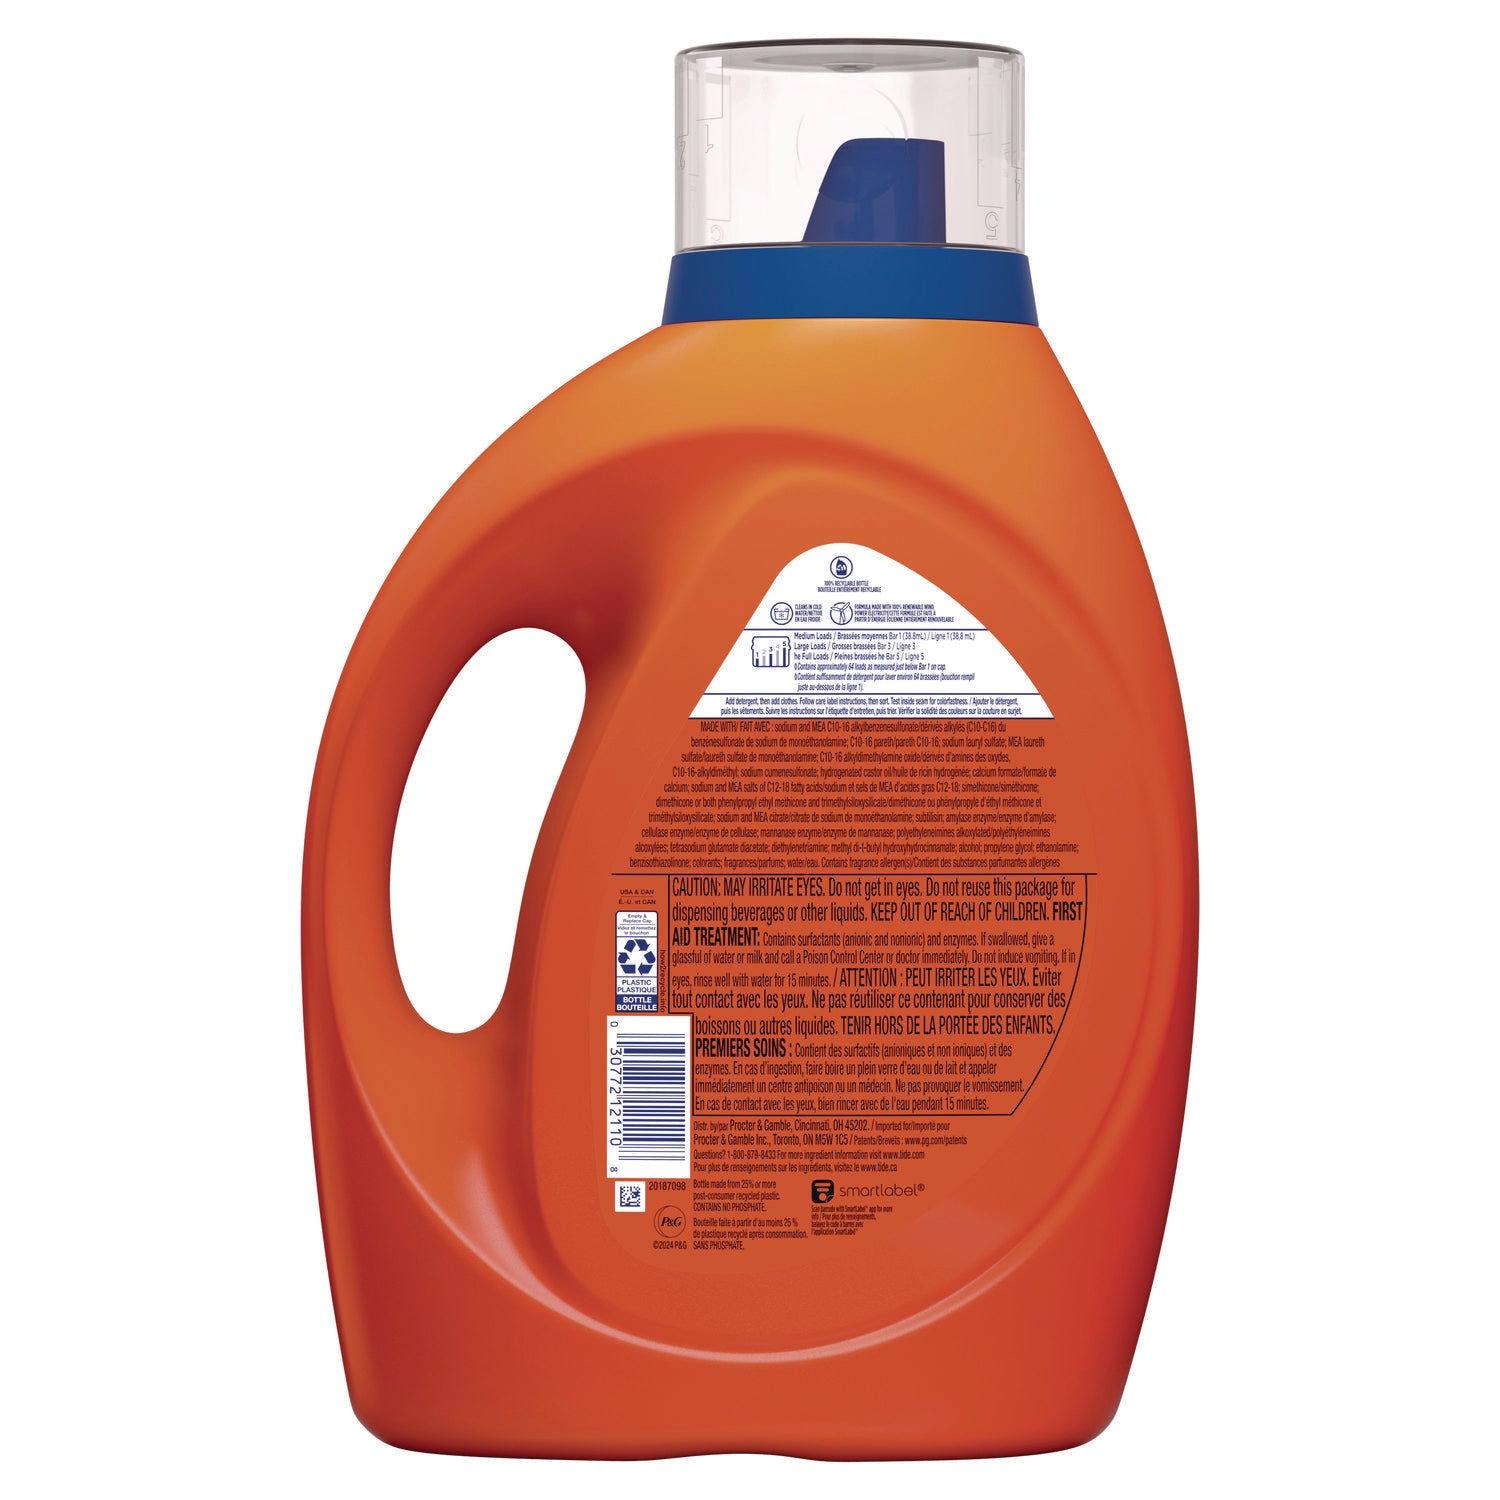 he-laundry-detergent-original-scent-liquid-64-loads-84-oz-bottle_pgc12110ea - 4